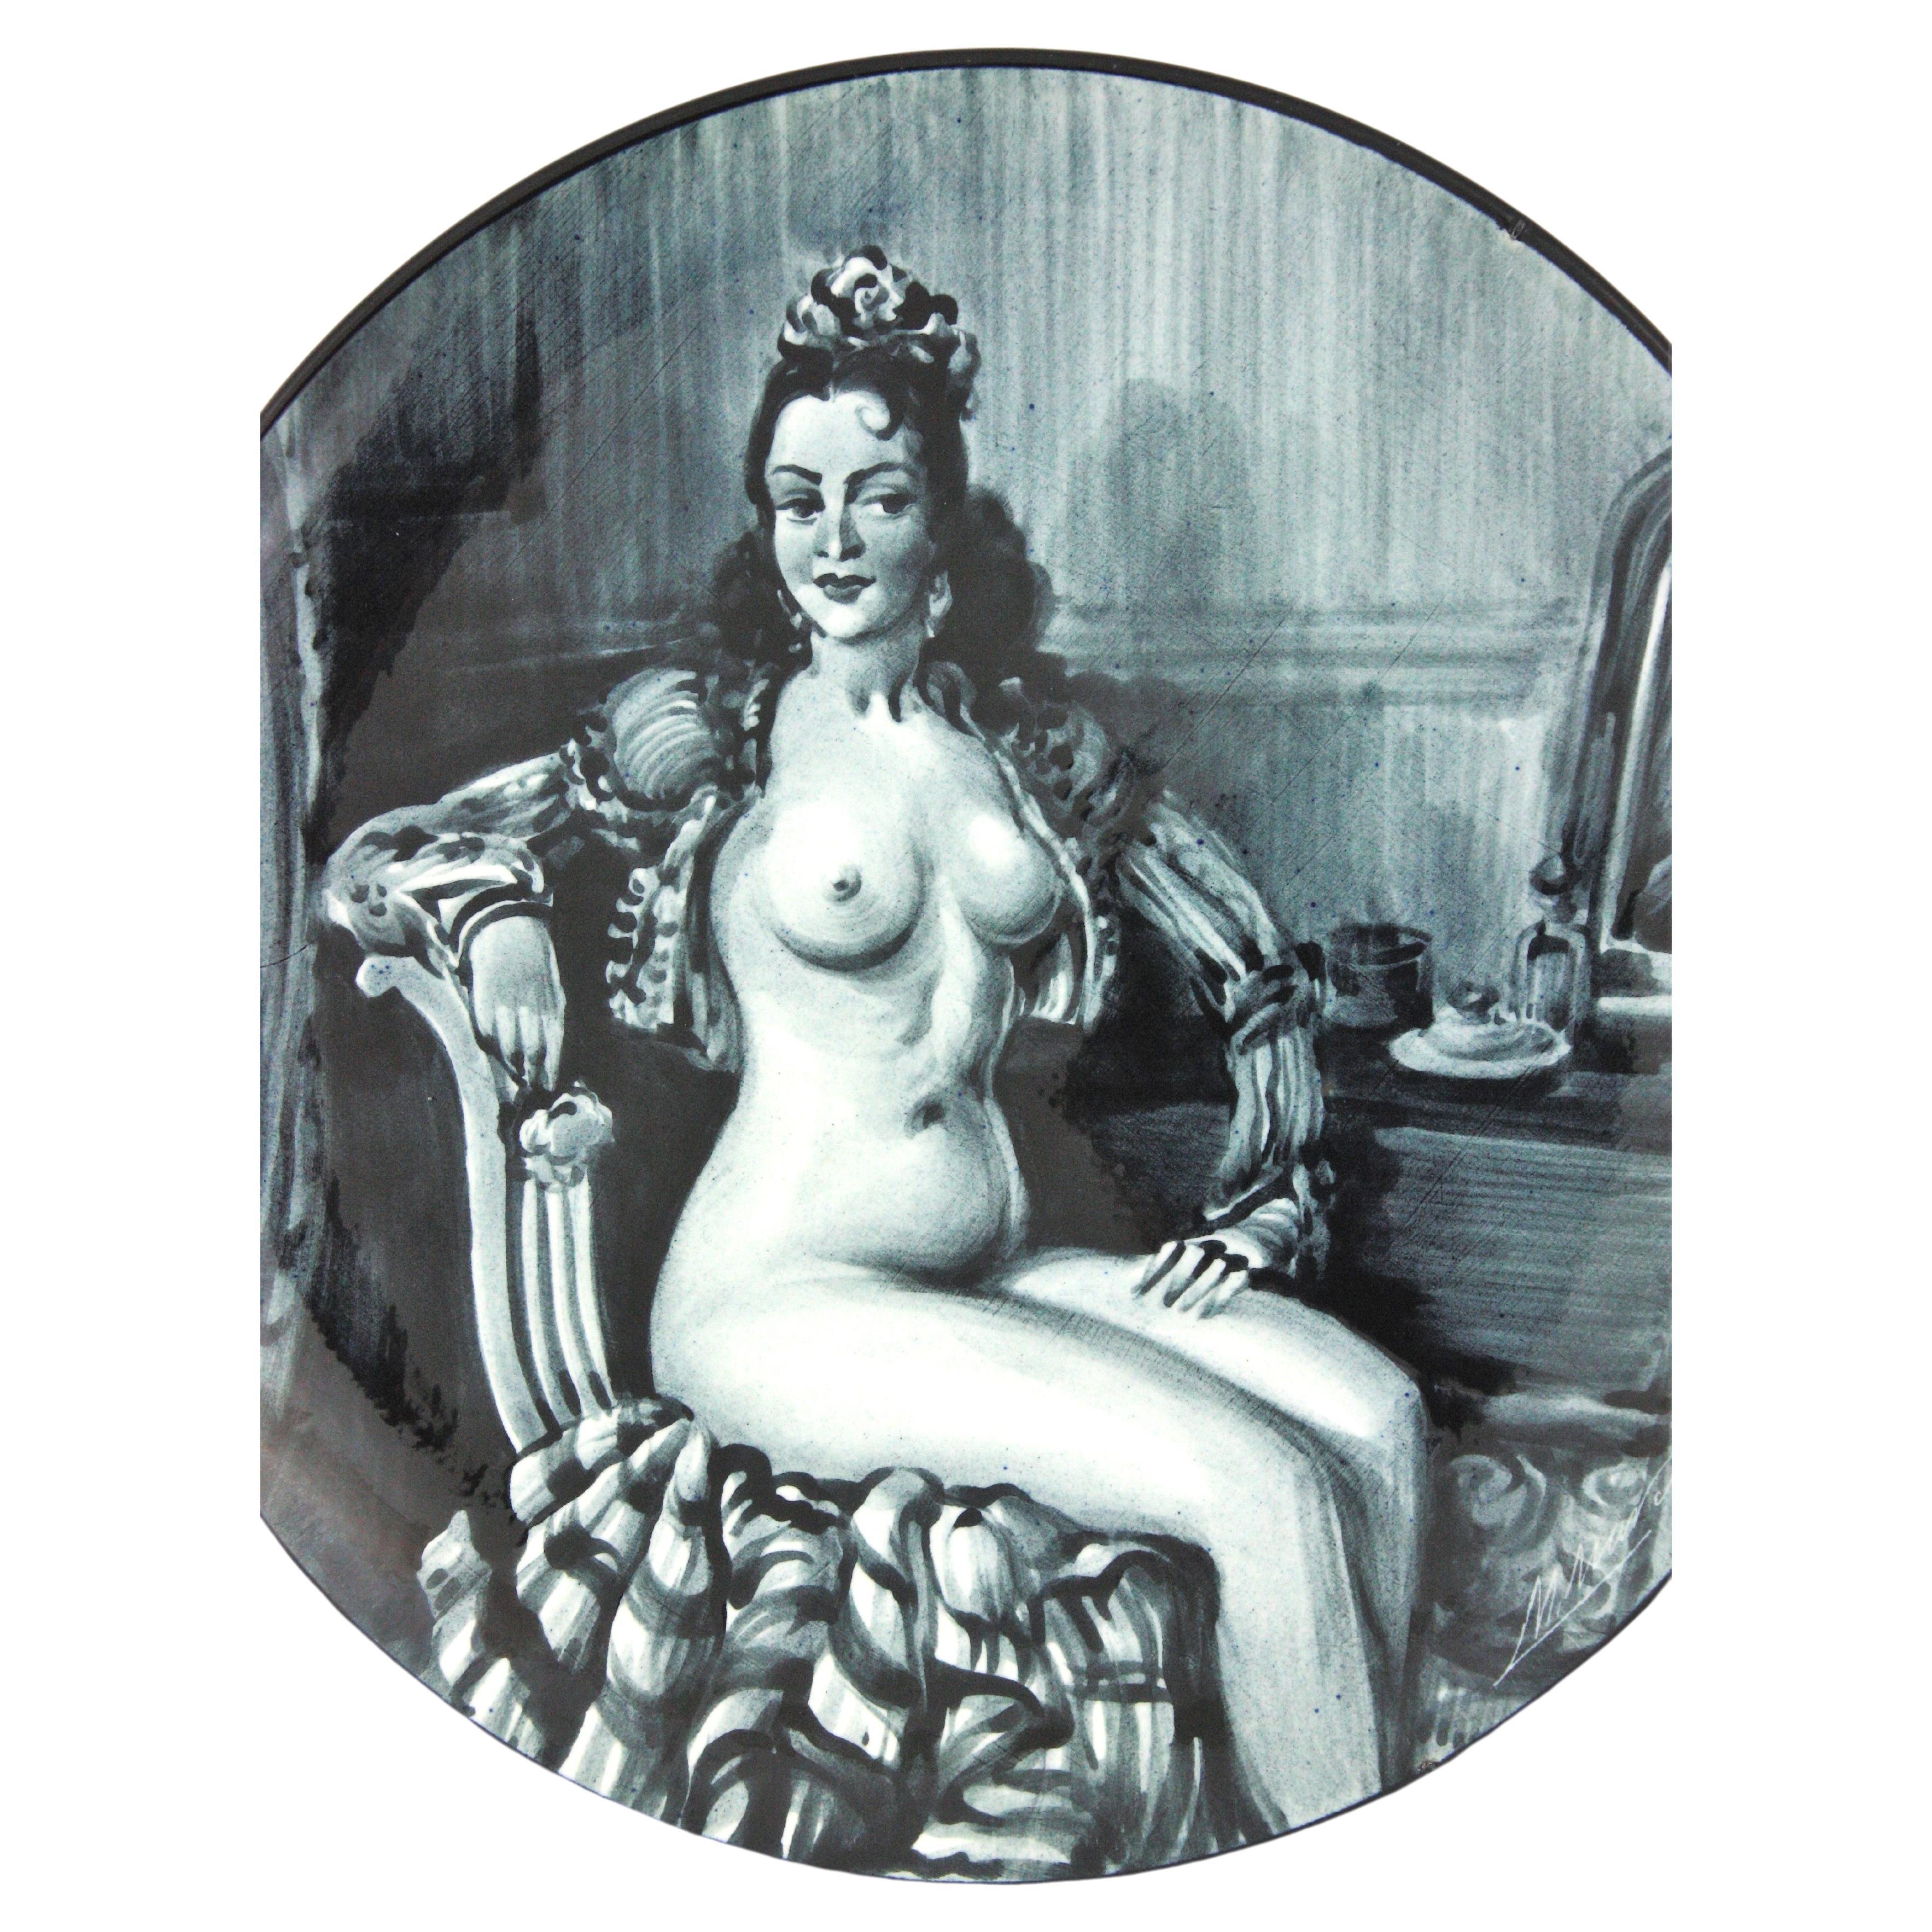 Plaque murale décorative en céramique émaillée, peinte à la main, représentant une femme nue,  Espagne, années 1950
Danseuse espagnole andalouse nue en noir et blanc.
Signé M-One en bas à droite.
Marqué au dos : 